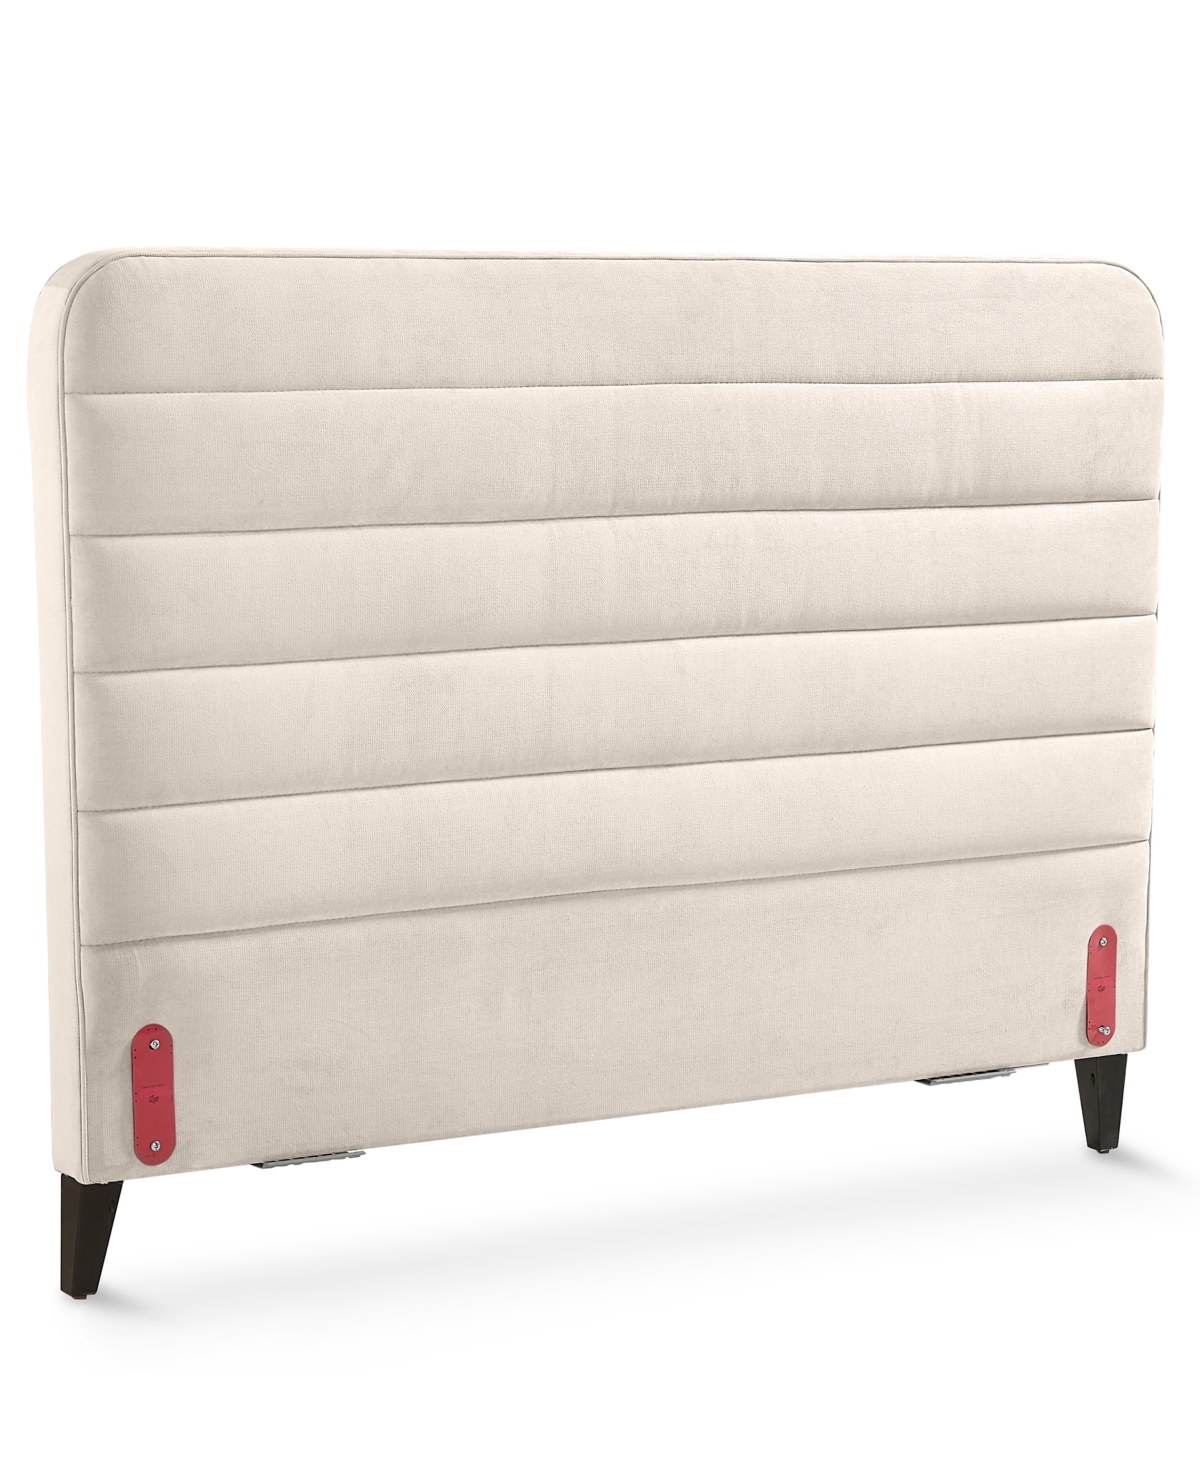 Furniture Haryan Upholstered Twin Headboard In Creme